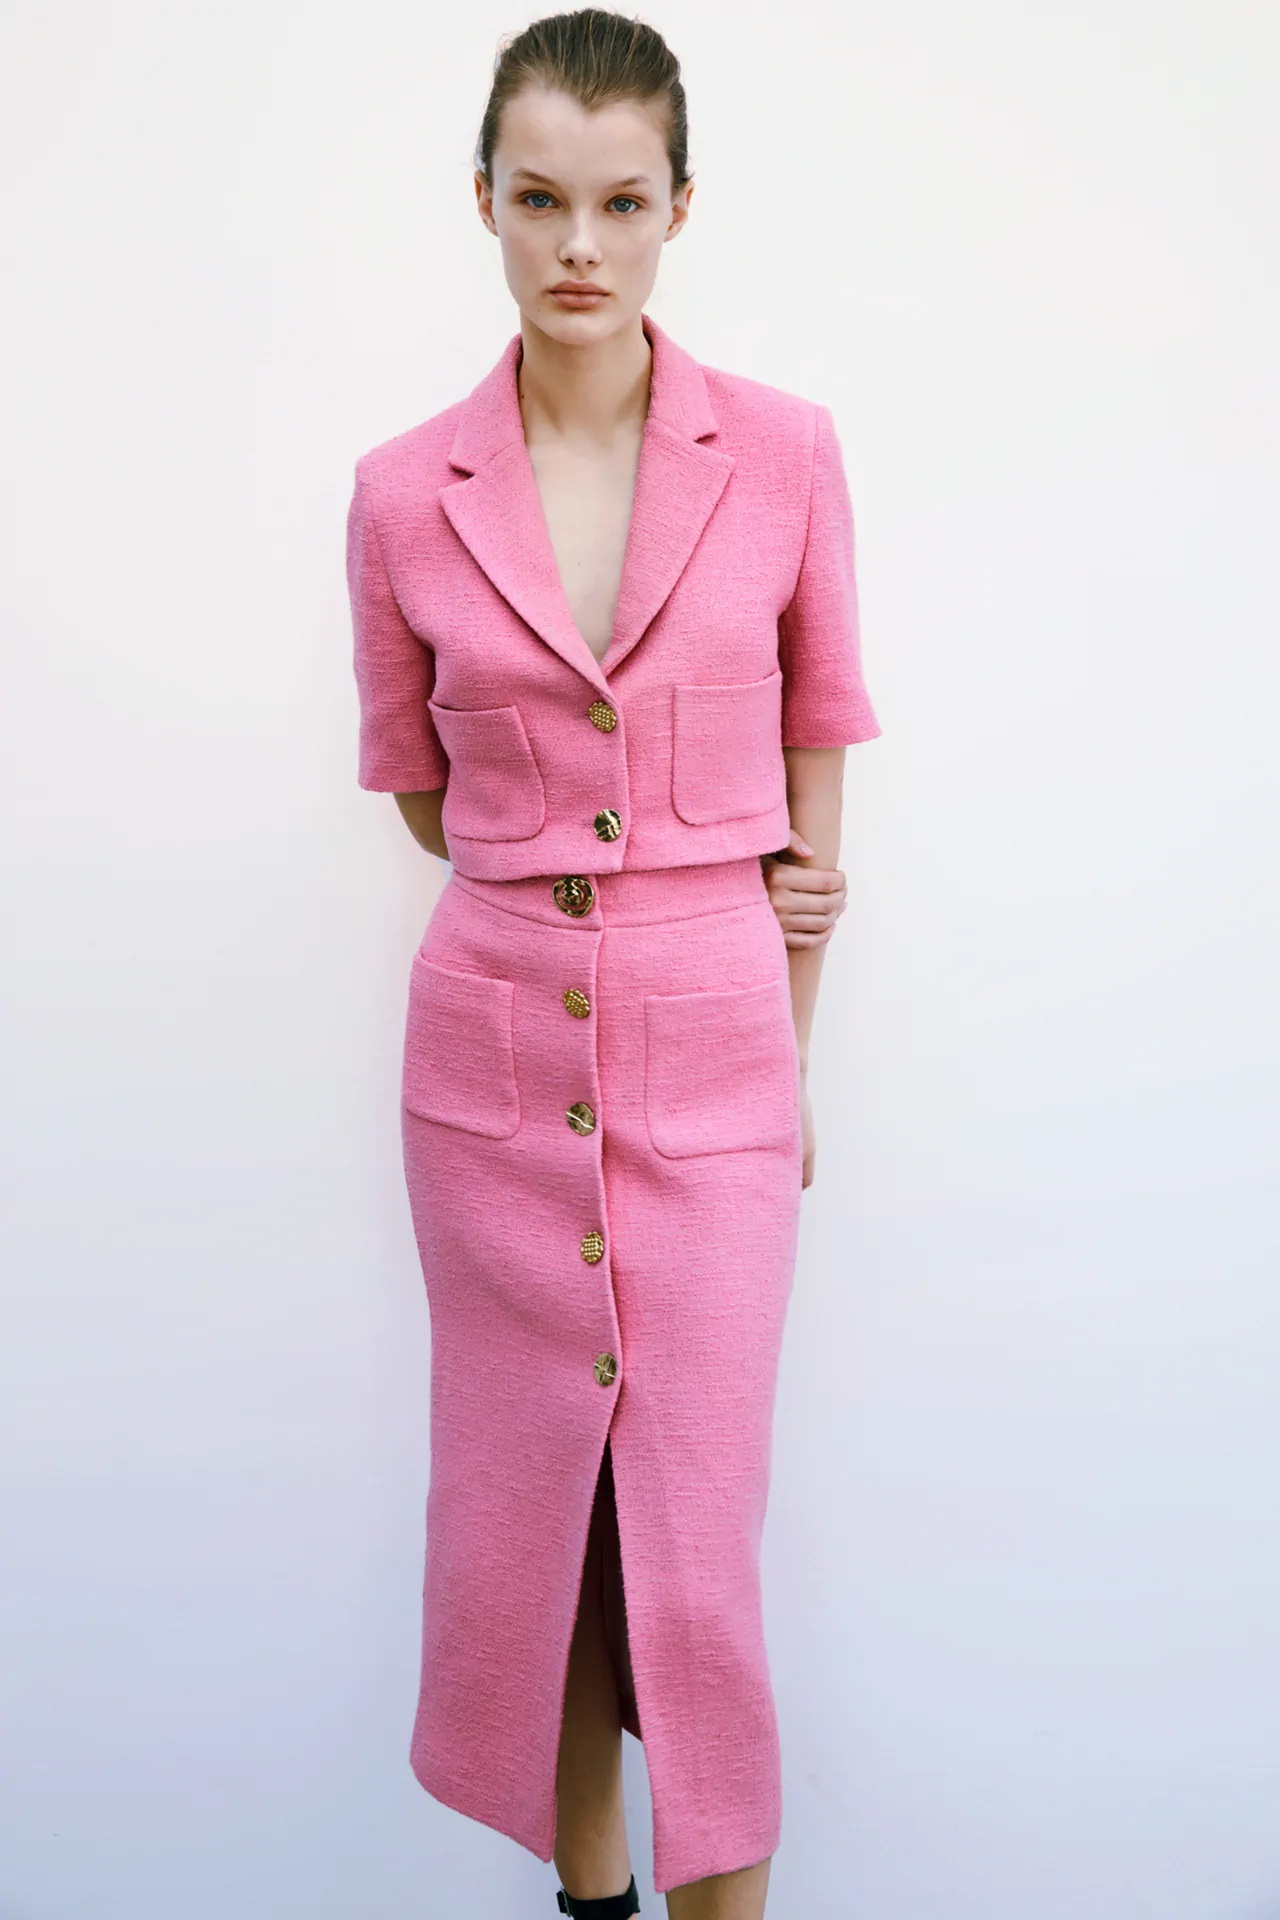 Zara tiene una versión más femenina y barata del traje rosa de Letizia